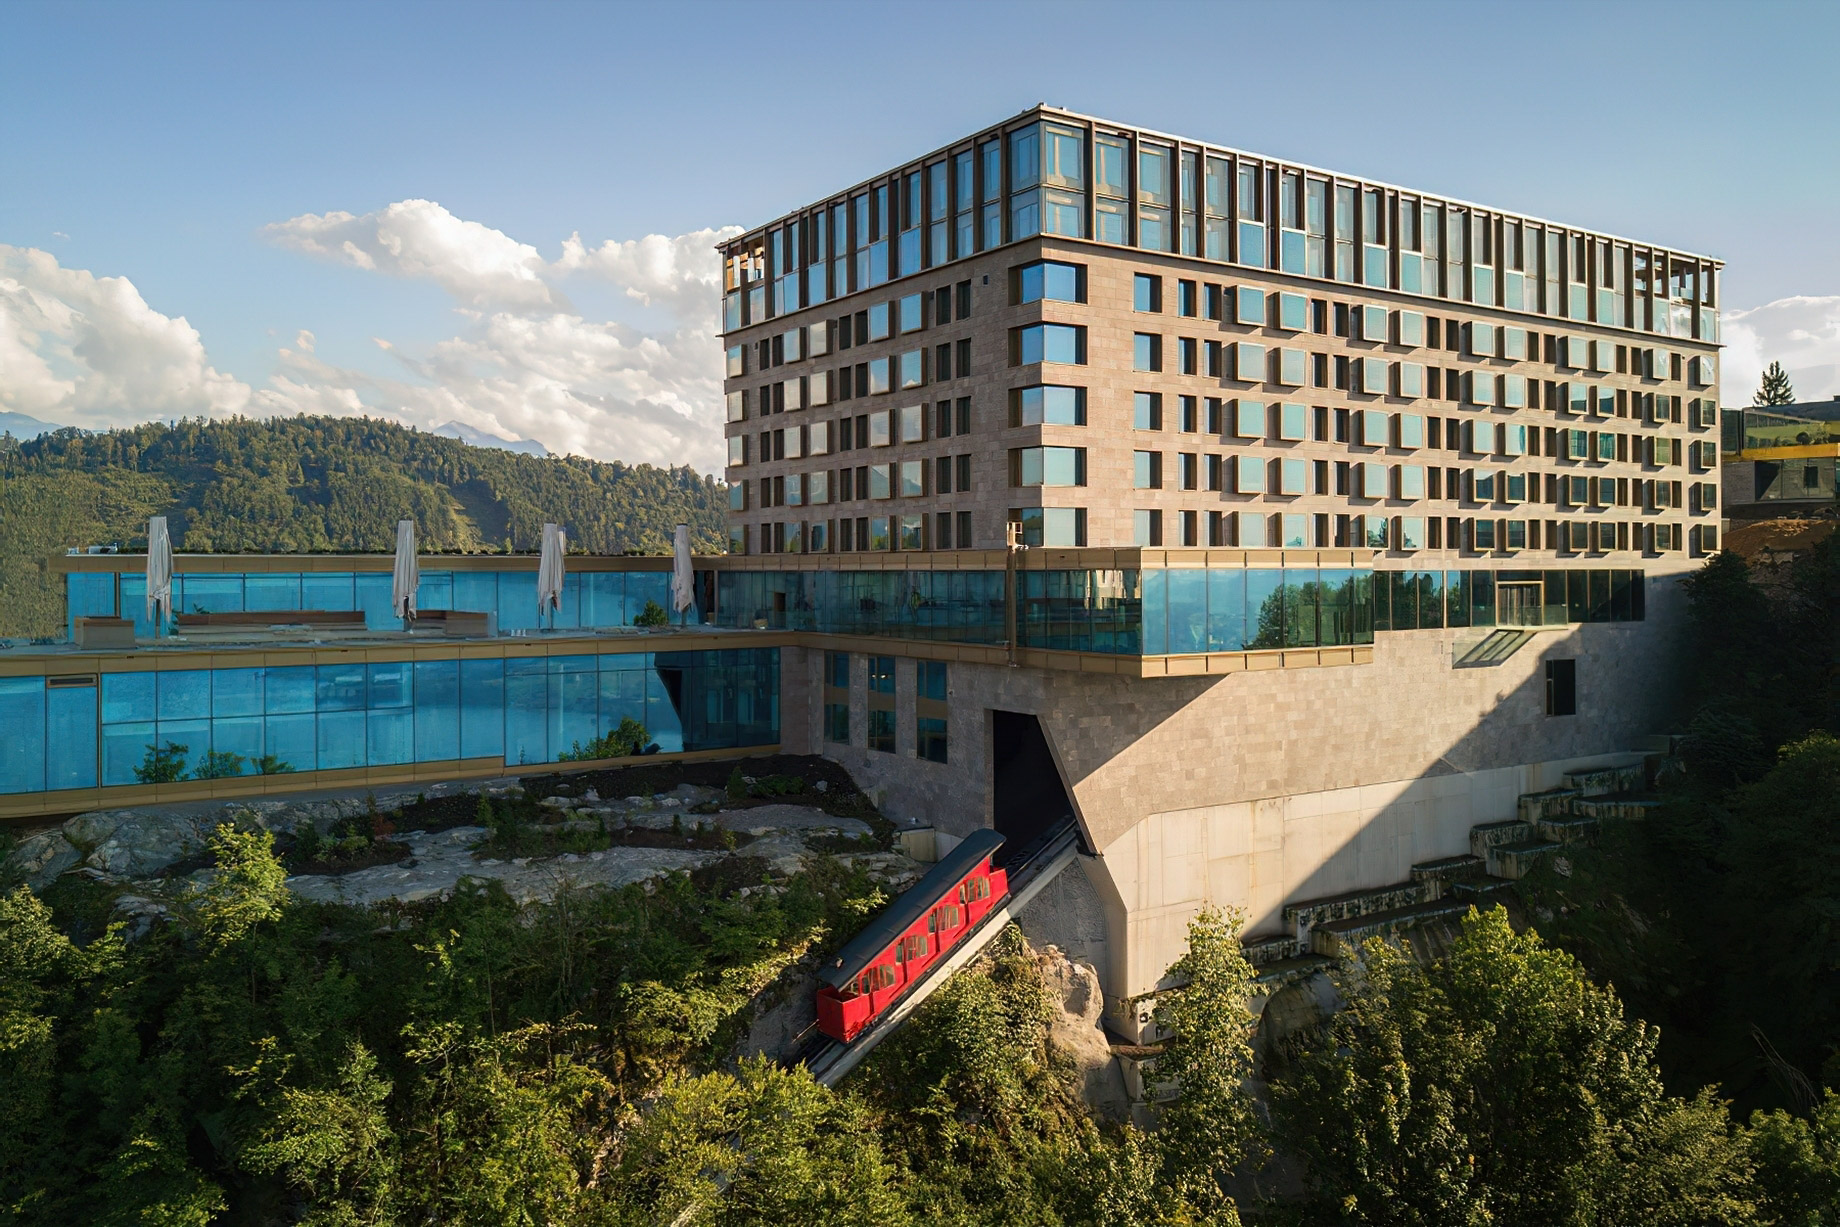 Burgenstock Hotel & Alpine Spa – Obburgen, Switzerland – Buergenstock Resort Lake Lucerne Funicular